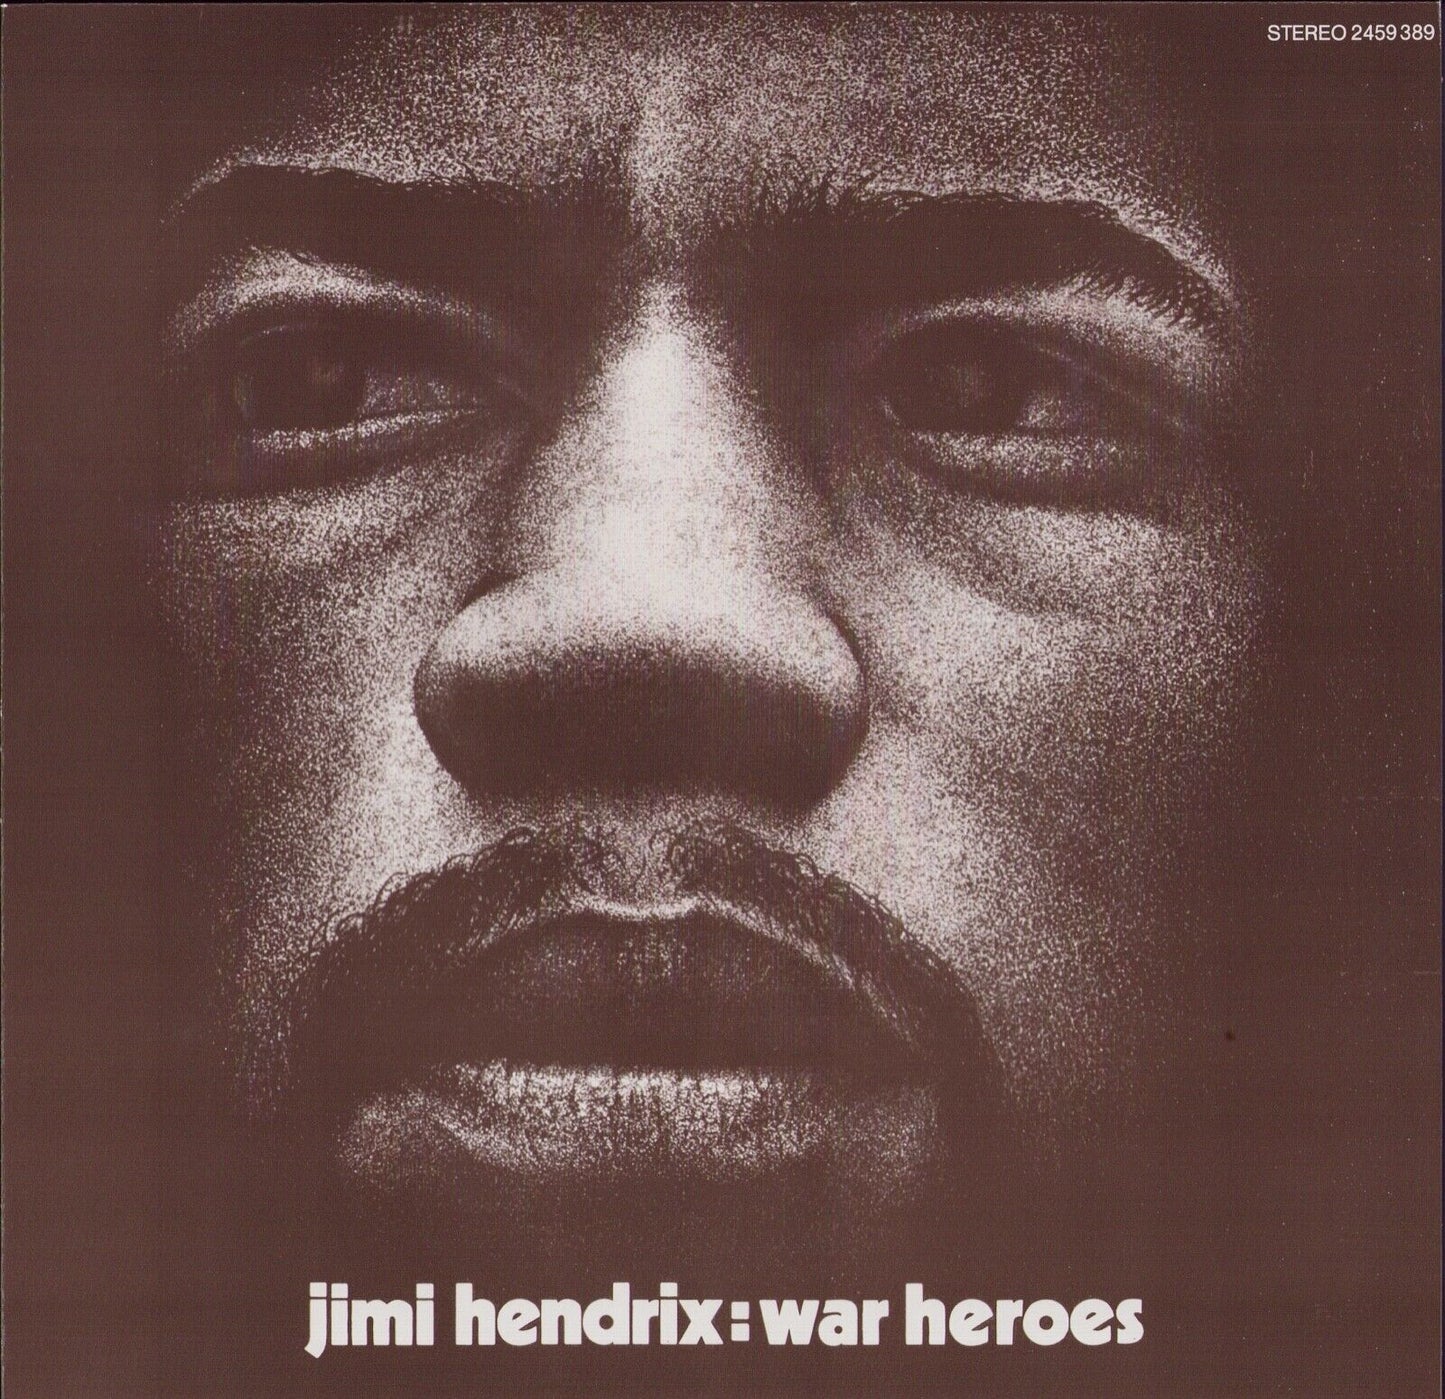 Jimi Hendrix ‎- War Heroes Vinyl LP